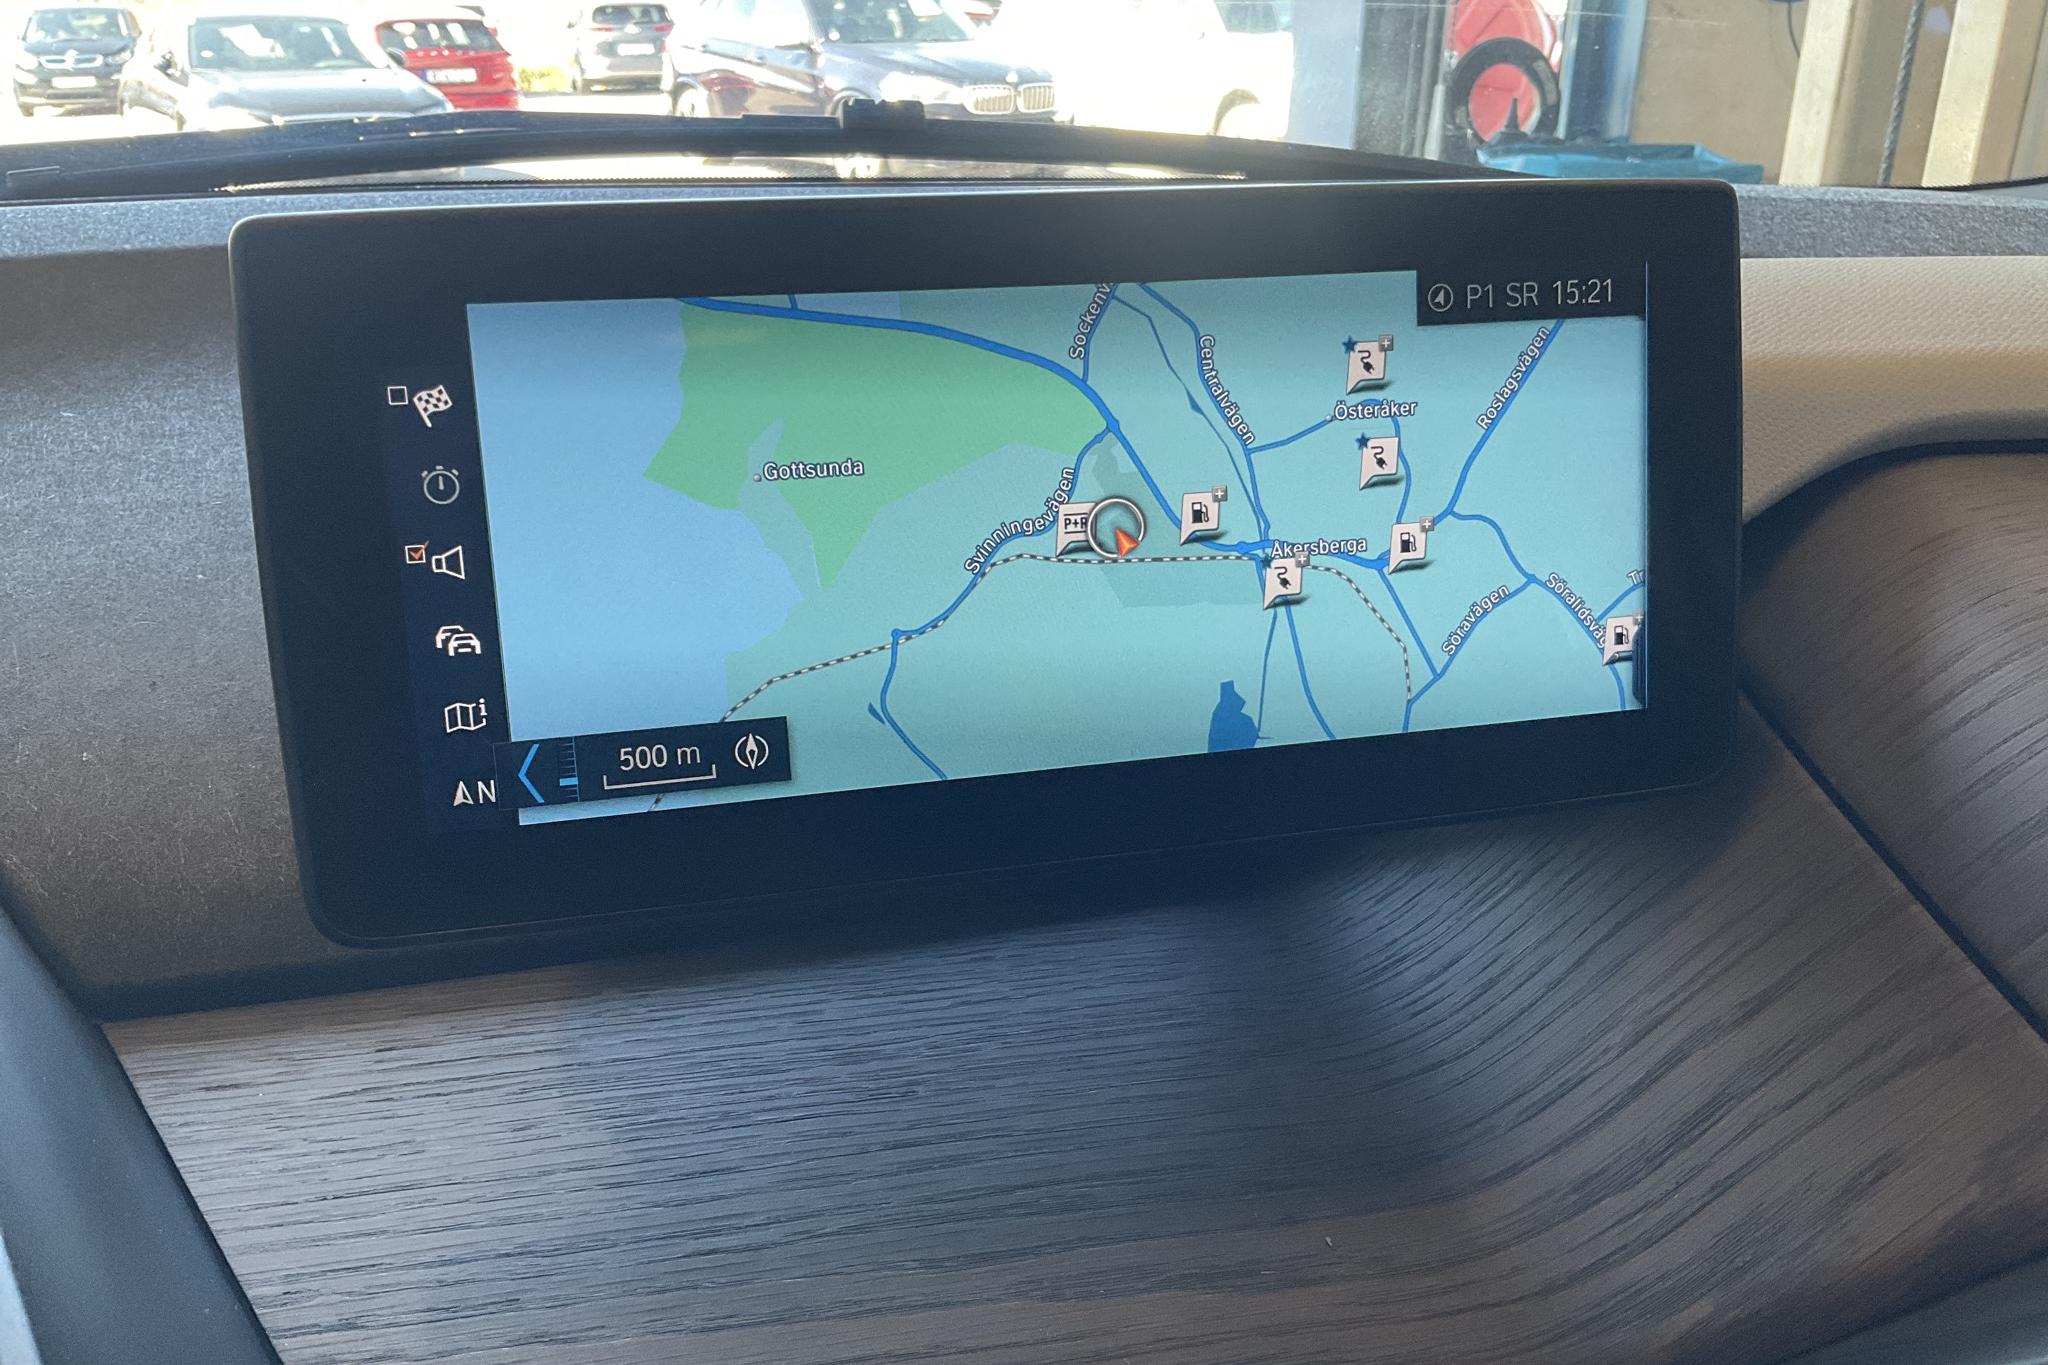 BMW i3s 94Ah, I01 (184hk) - 5 700 mil - Automat - röd - 2018